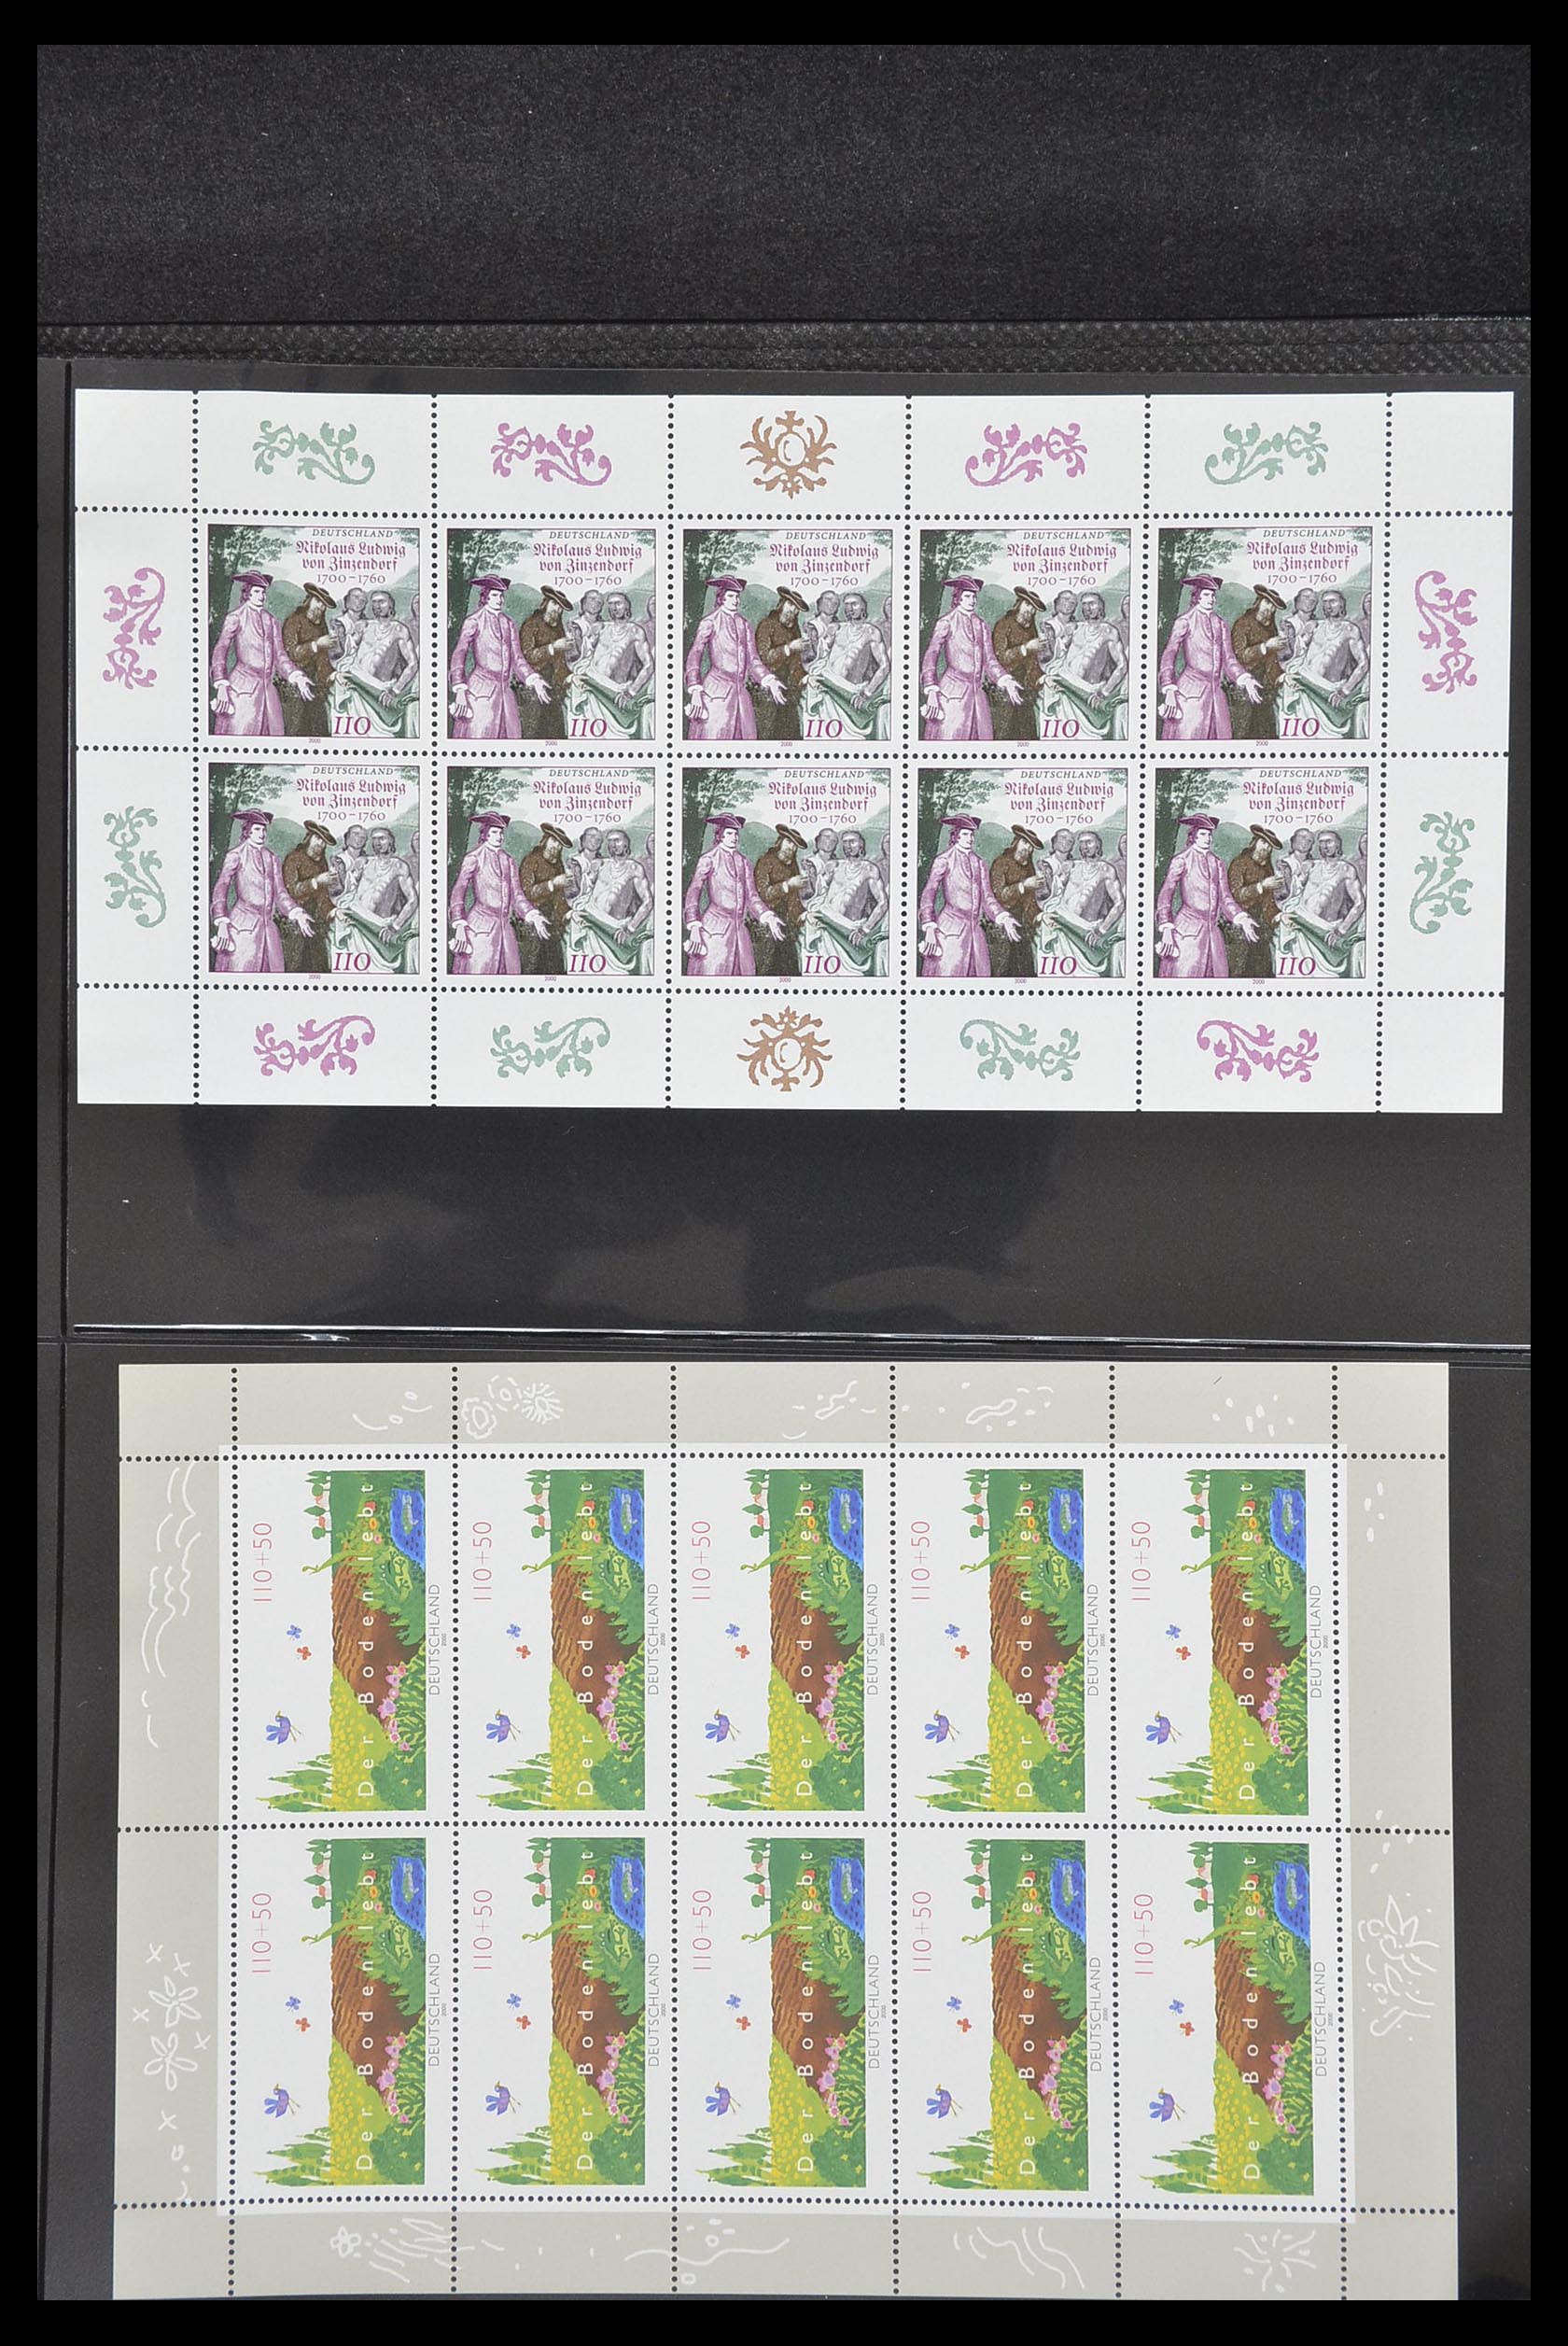 33936 160 - Stamp collection 33936 Bundespost kleinbogen 1994-2000.